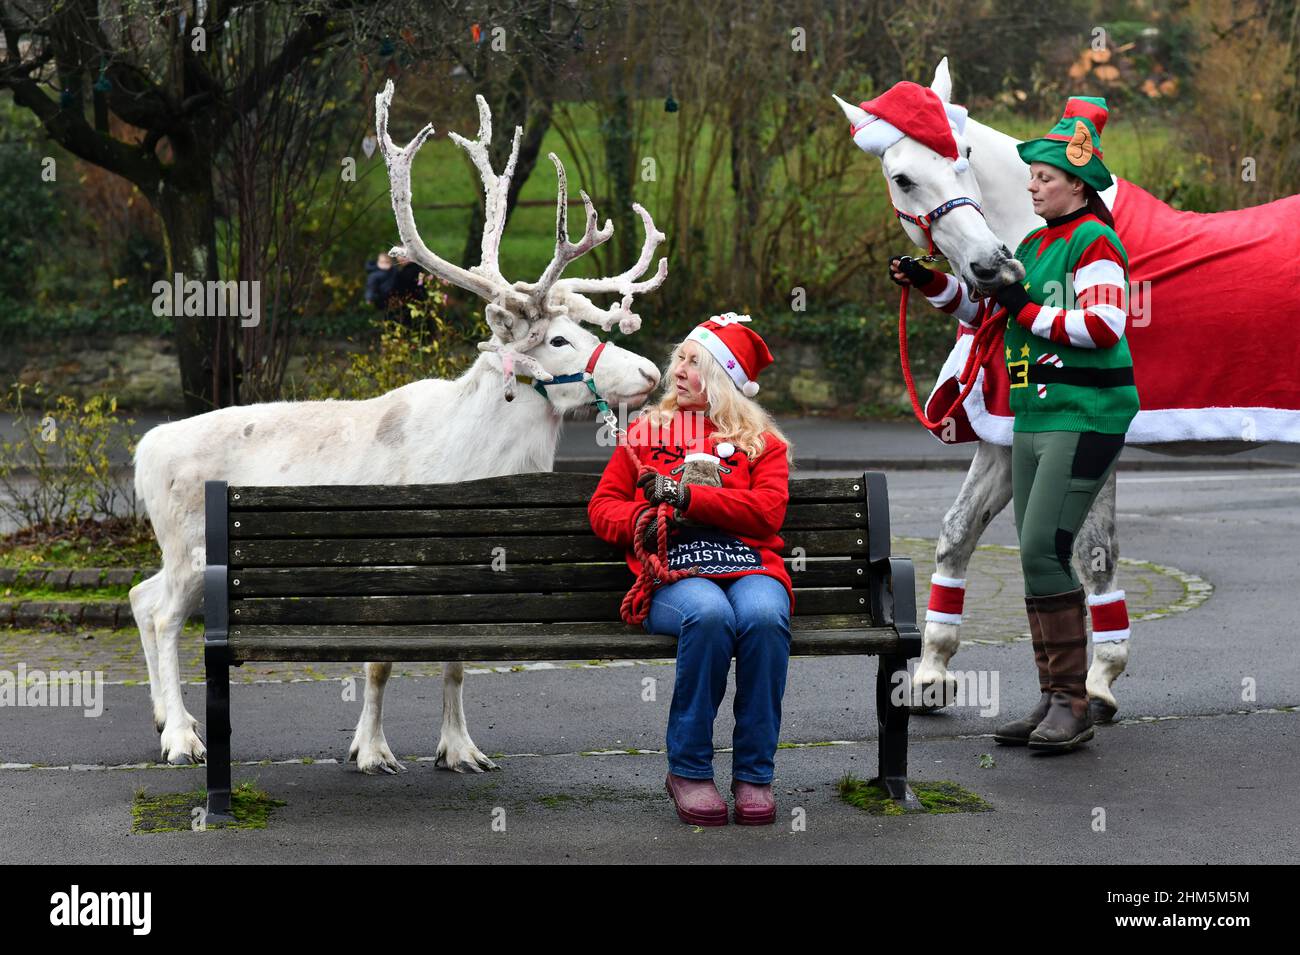 Neve o nessuna neve è Natale bianco nel villaggio di Coalbrookdale quest'anno. Floki la renna bianca e il suo compagno di scuderia Opal illuminano il villaggio Foto Stock